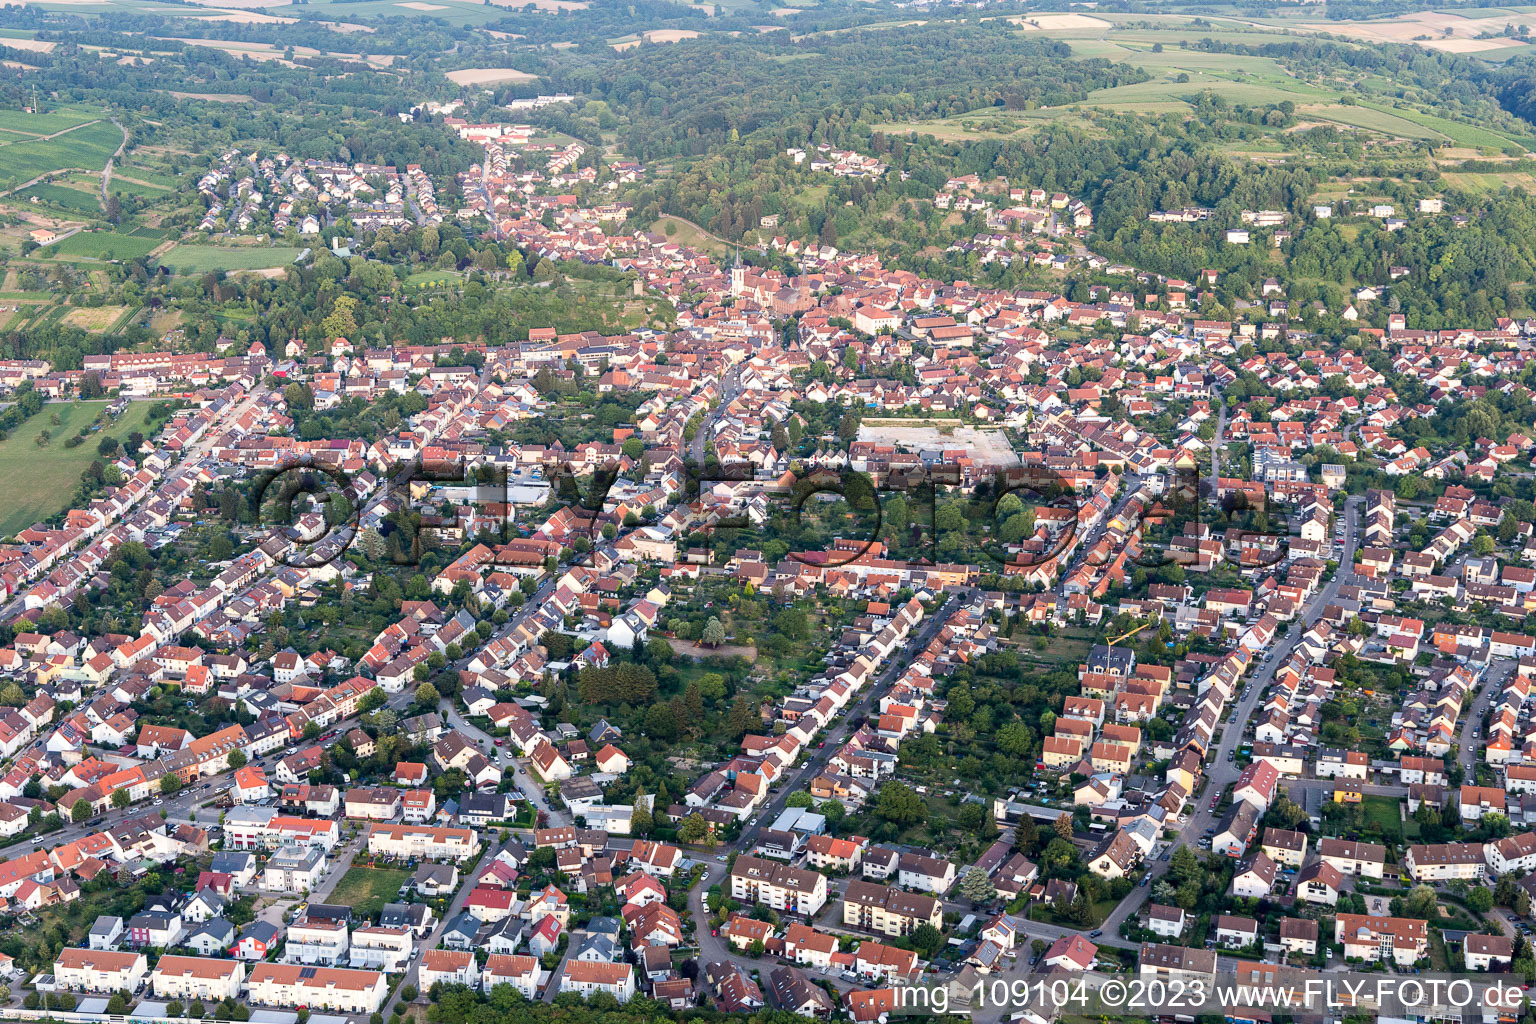 Photographie aérienne de Weingarten dans le département Bade-Wurtemberg, Allemagne